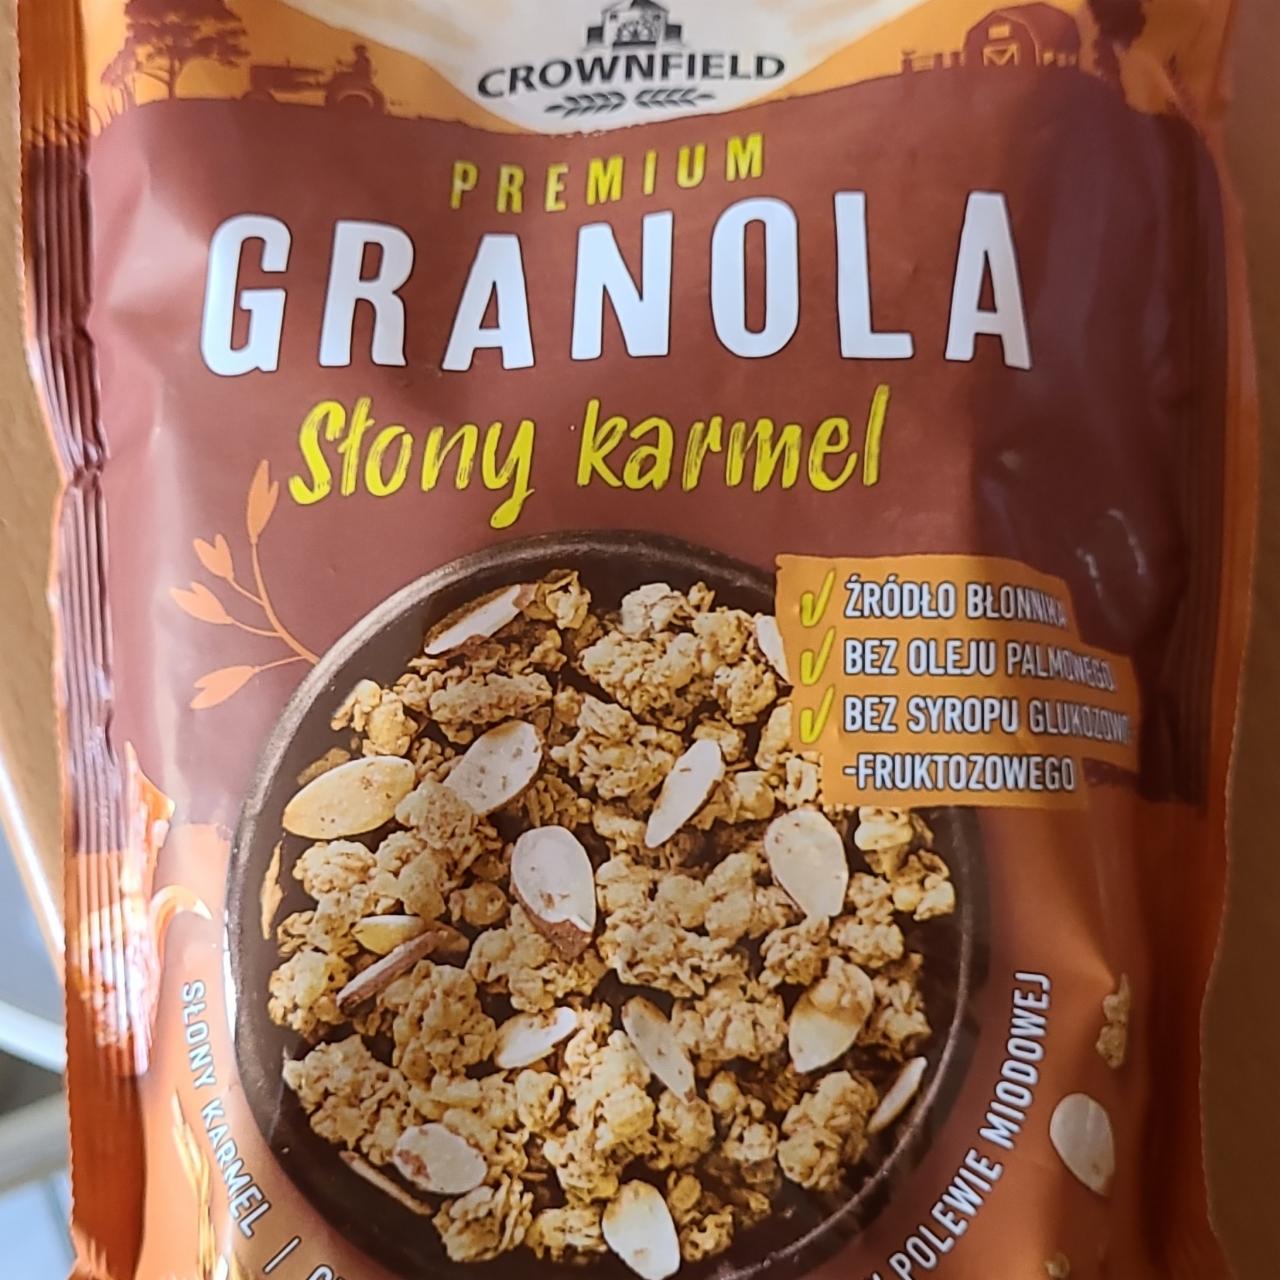 Zdjęcia - Granola Premium Słony karmel Crownfield